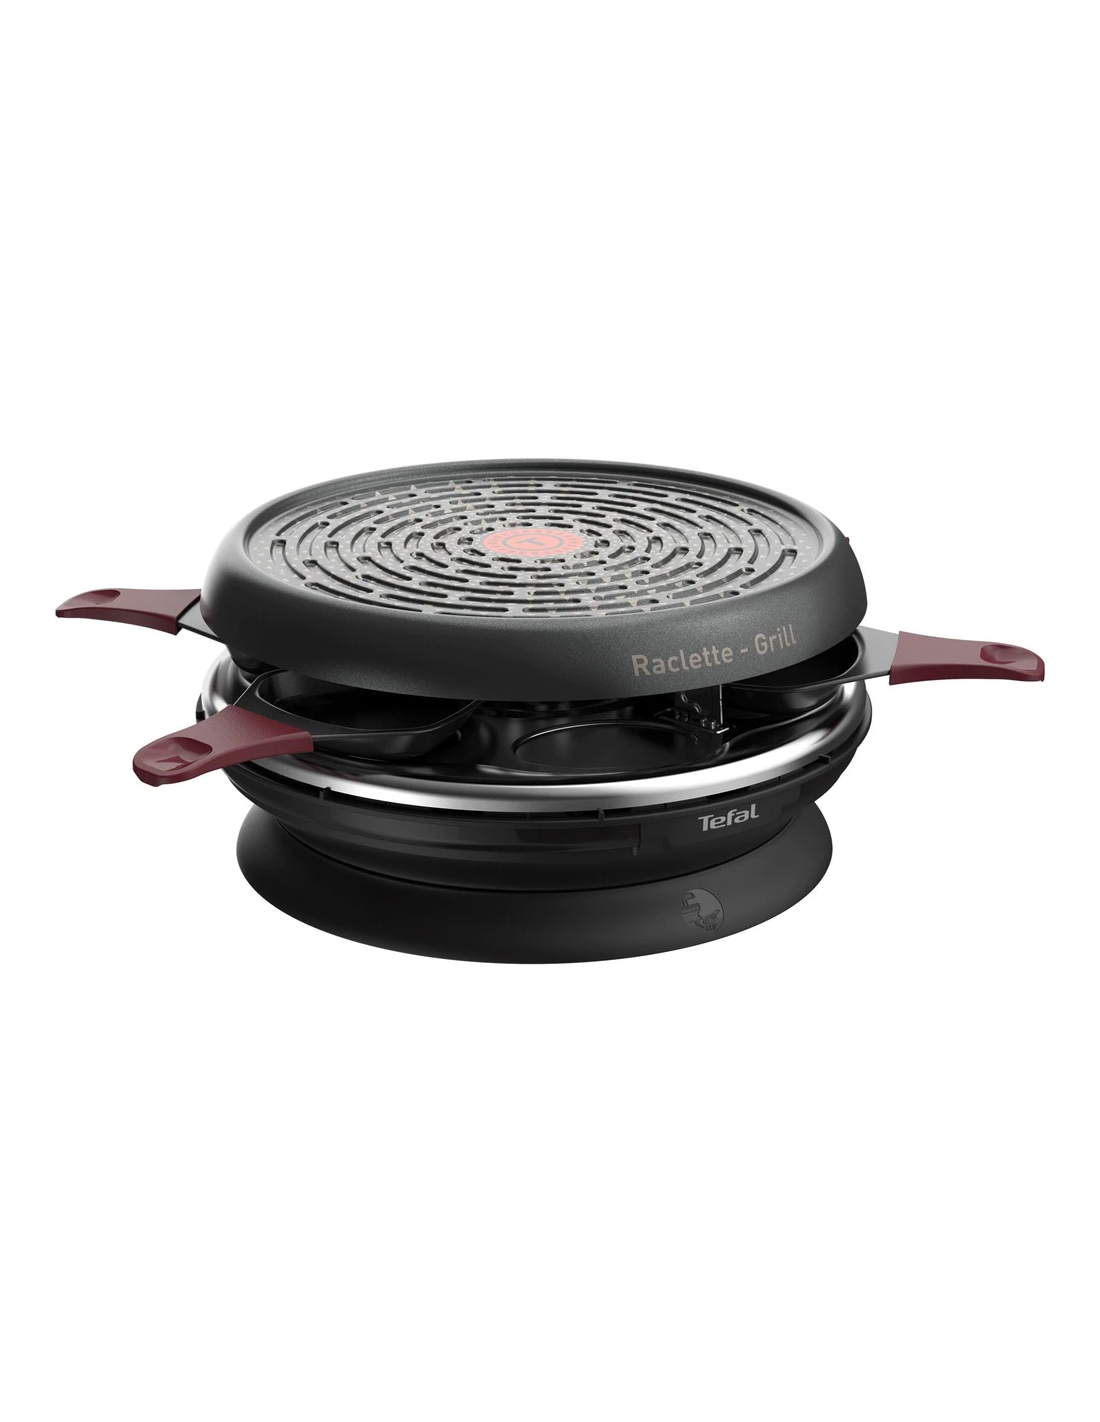 Thermo-Spot 2 en 1 raclette y grill 850 W Tefal Raclette Store'Inn RE1820 6 comensales revestimiento antiadherente Powerglide almacenamiento integrado apto para lavavajillas 